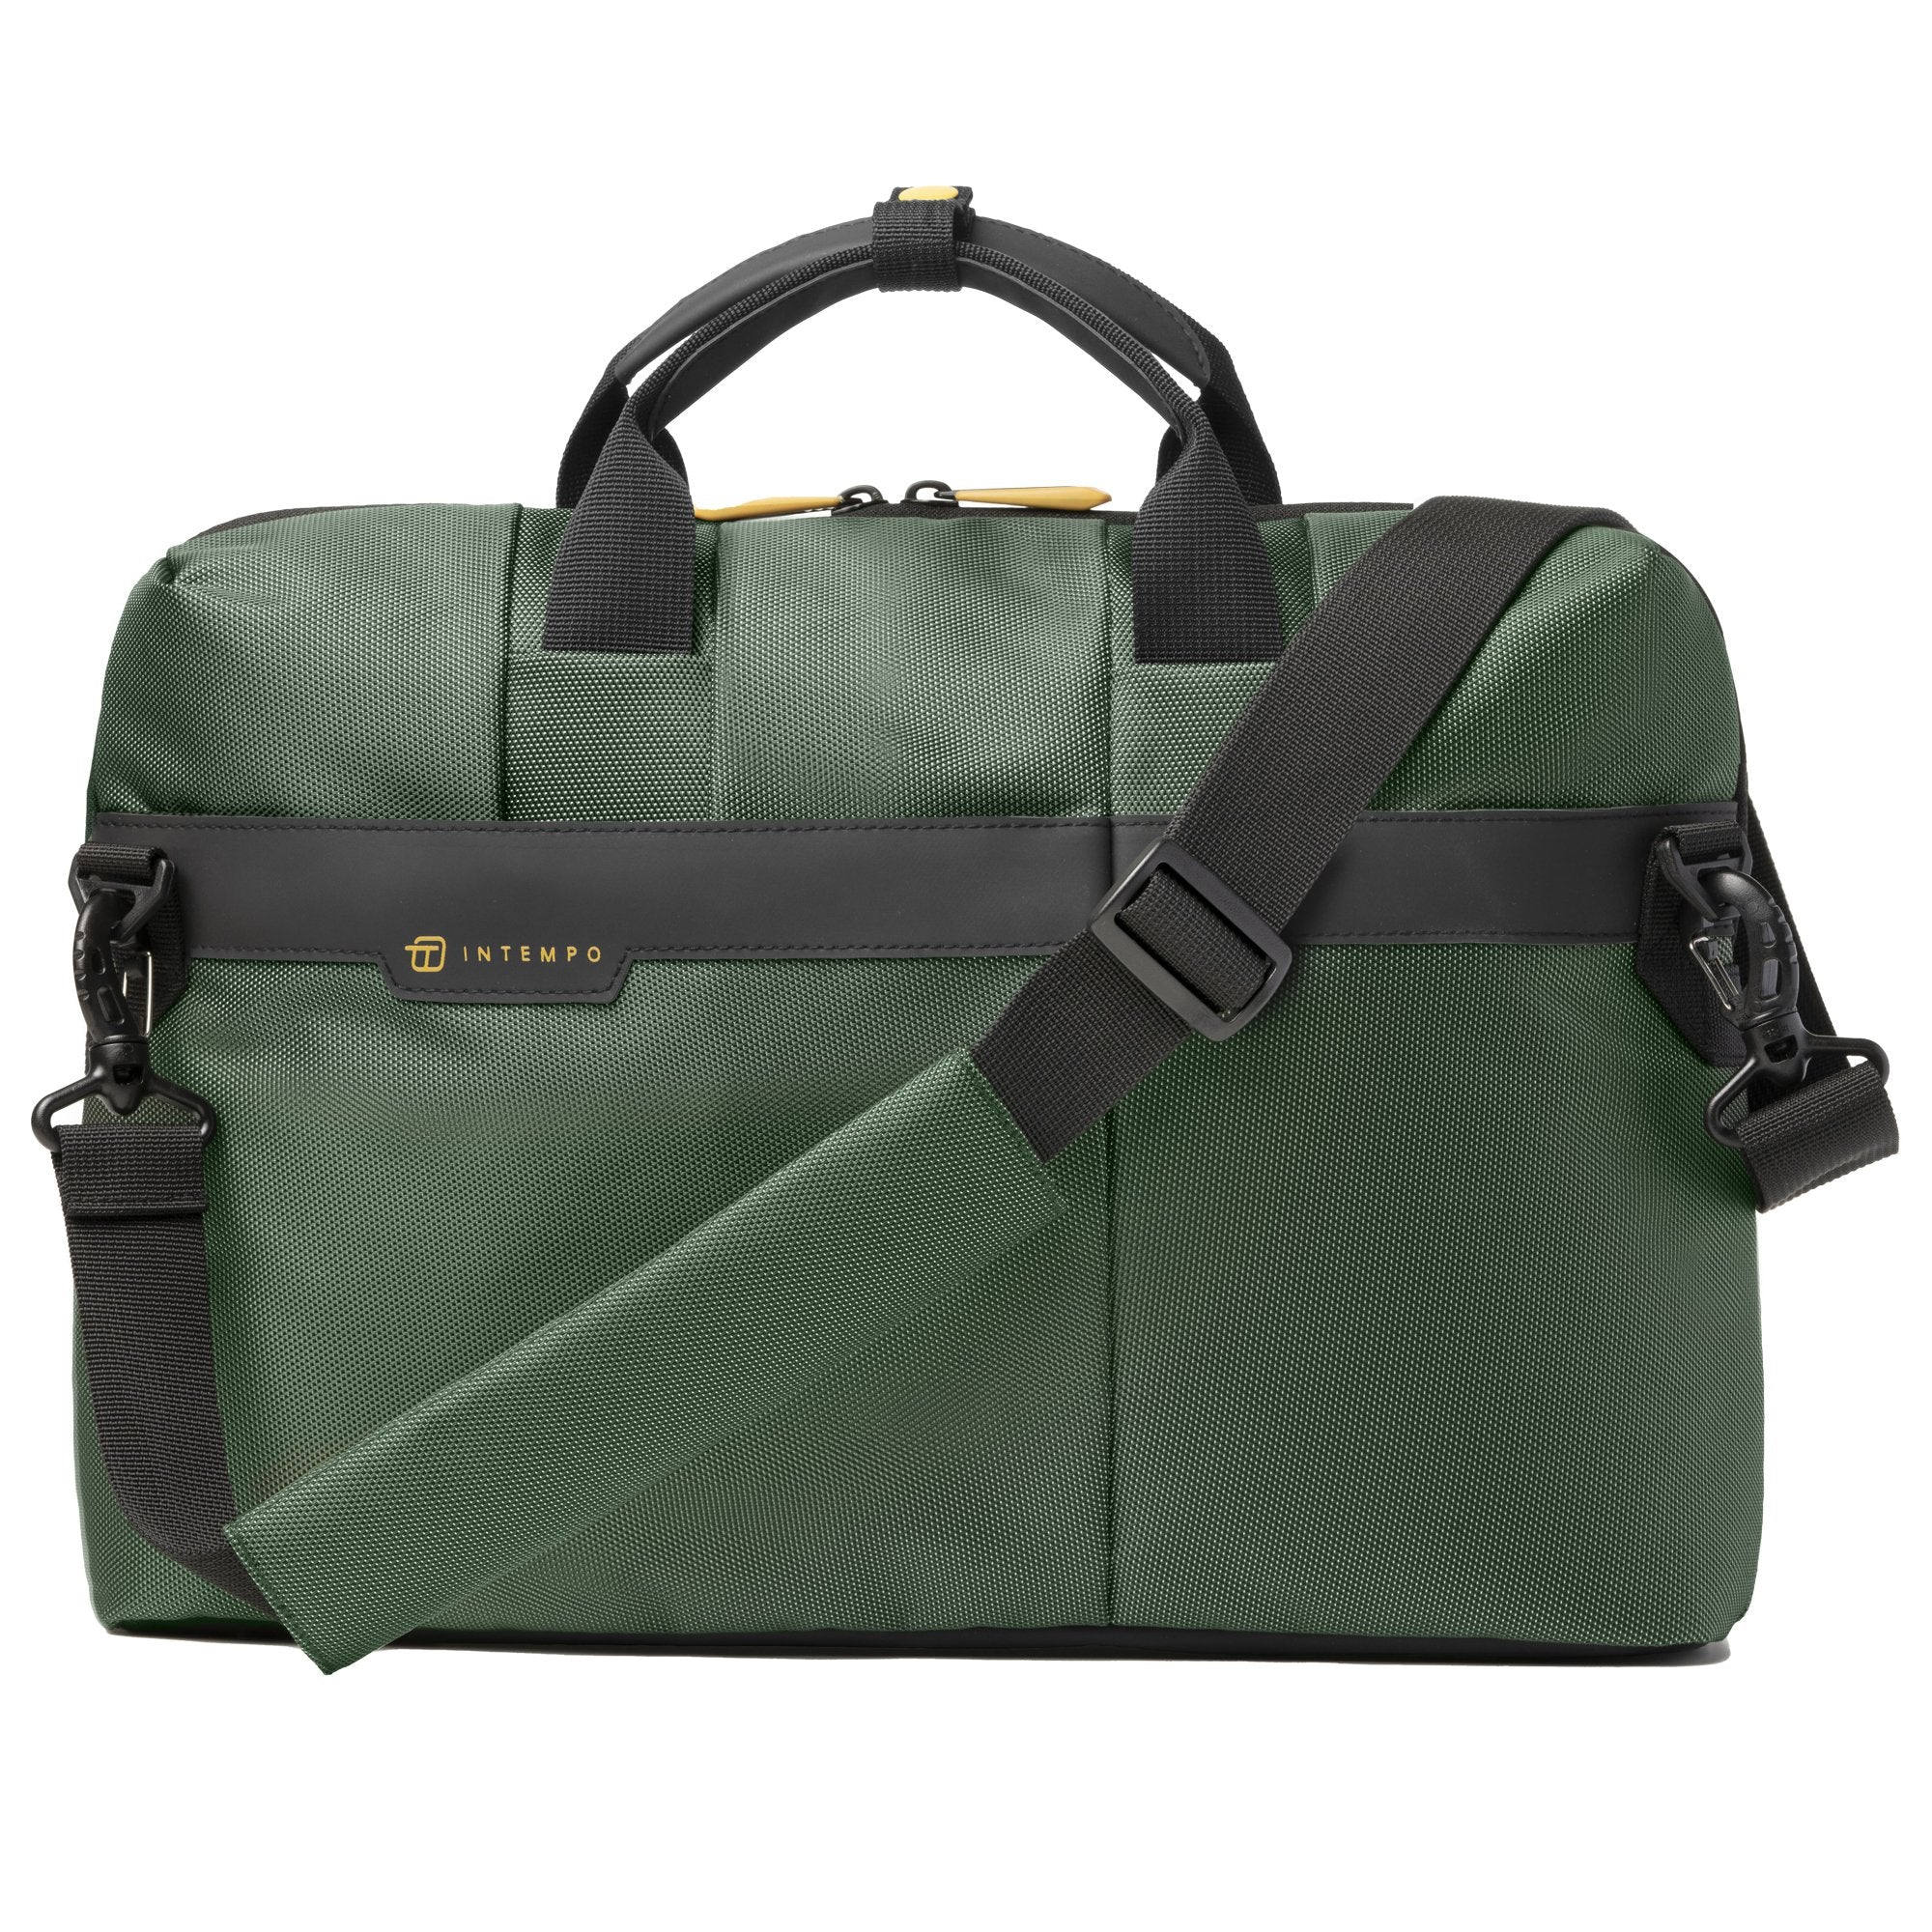 in-tempo-borsa-office-bag-job-slim-dim-43x33x10cm-tessuto-tecnico-verde-intempo